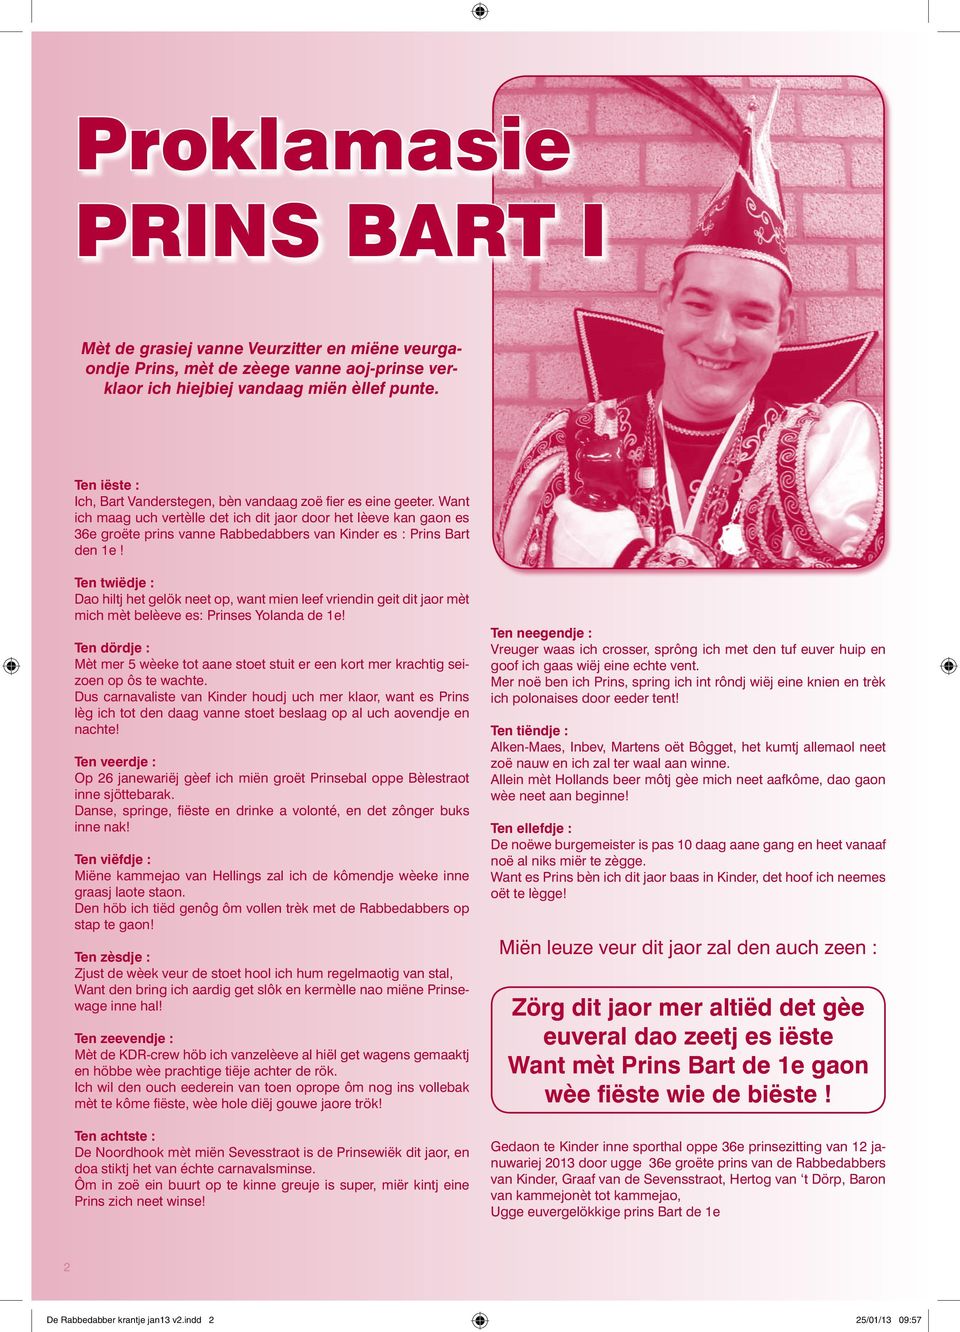 Want ich maag uch vertèlle det ich dit jaor door het lèeve kan gaon es 36e groëte prins vanne Rabbedabbers van Kinder es : Prins Bart den 1e!